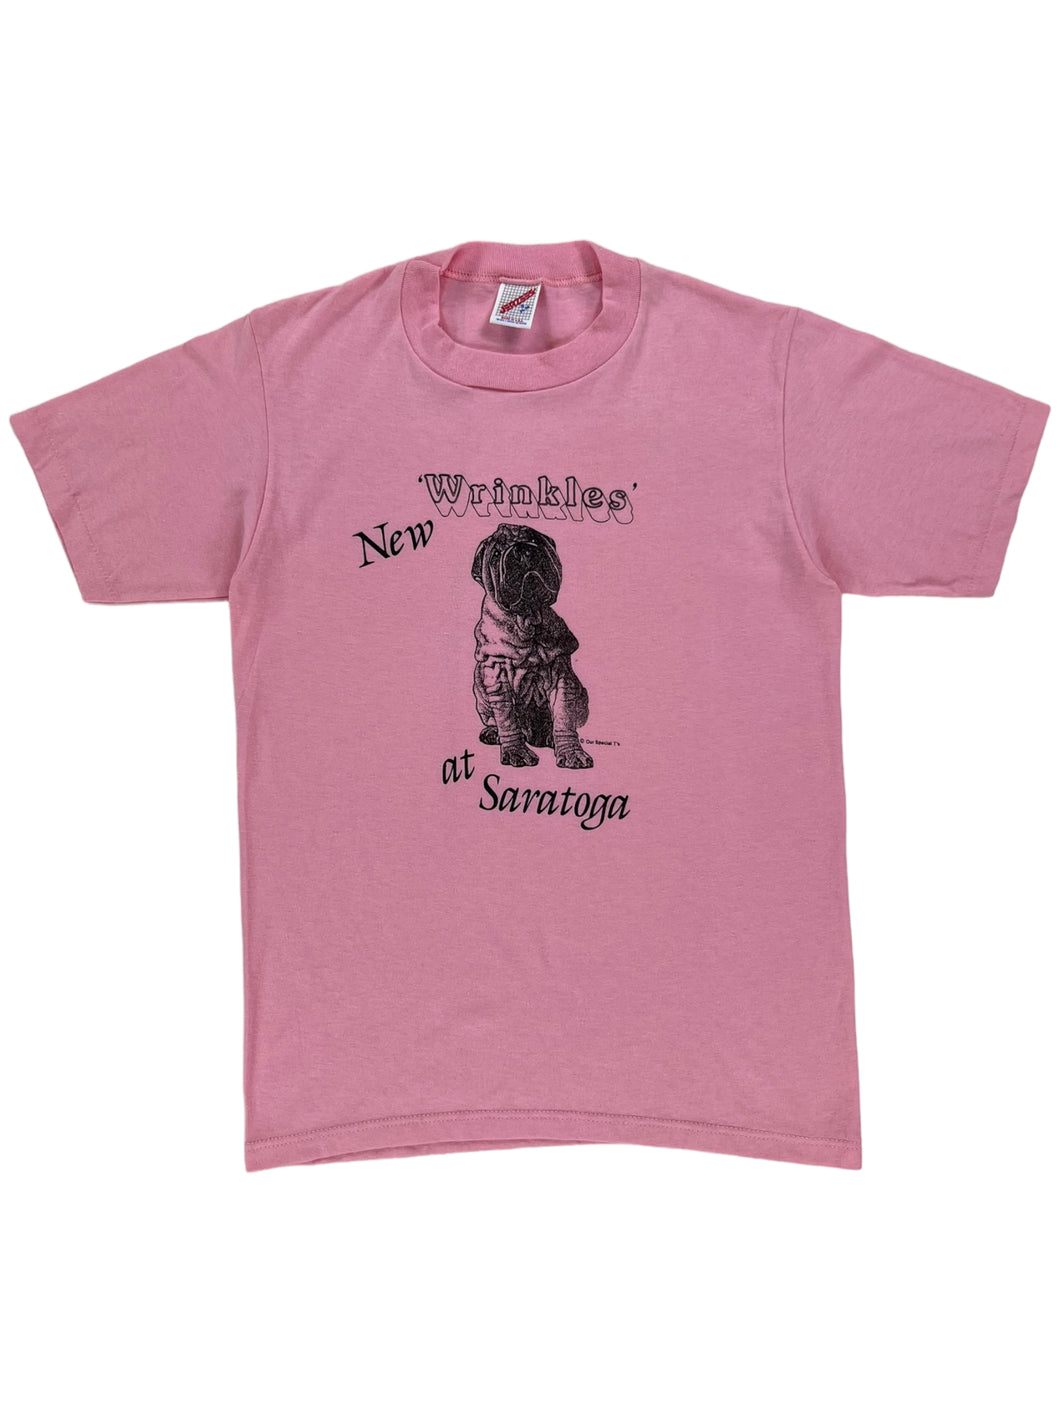 Vintage 80s New Wrinkles at Saratoga pug dog pink pastel tee (S)